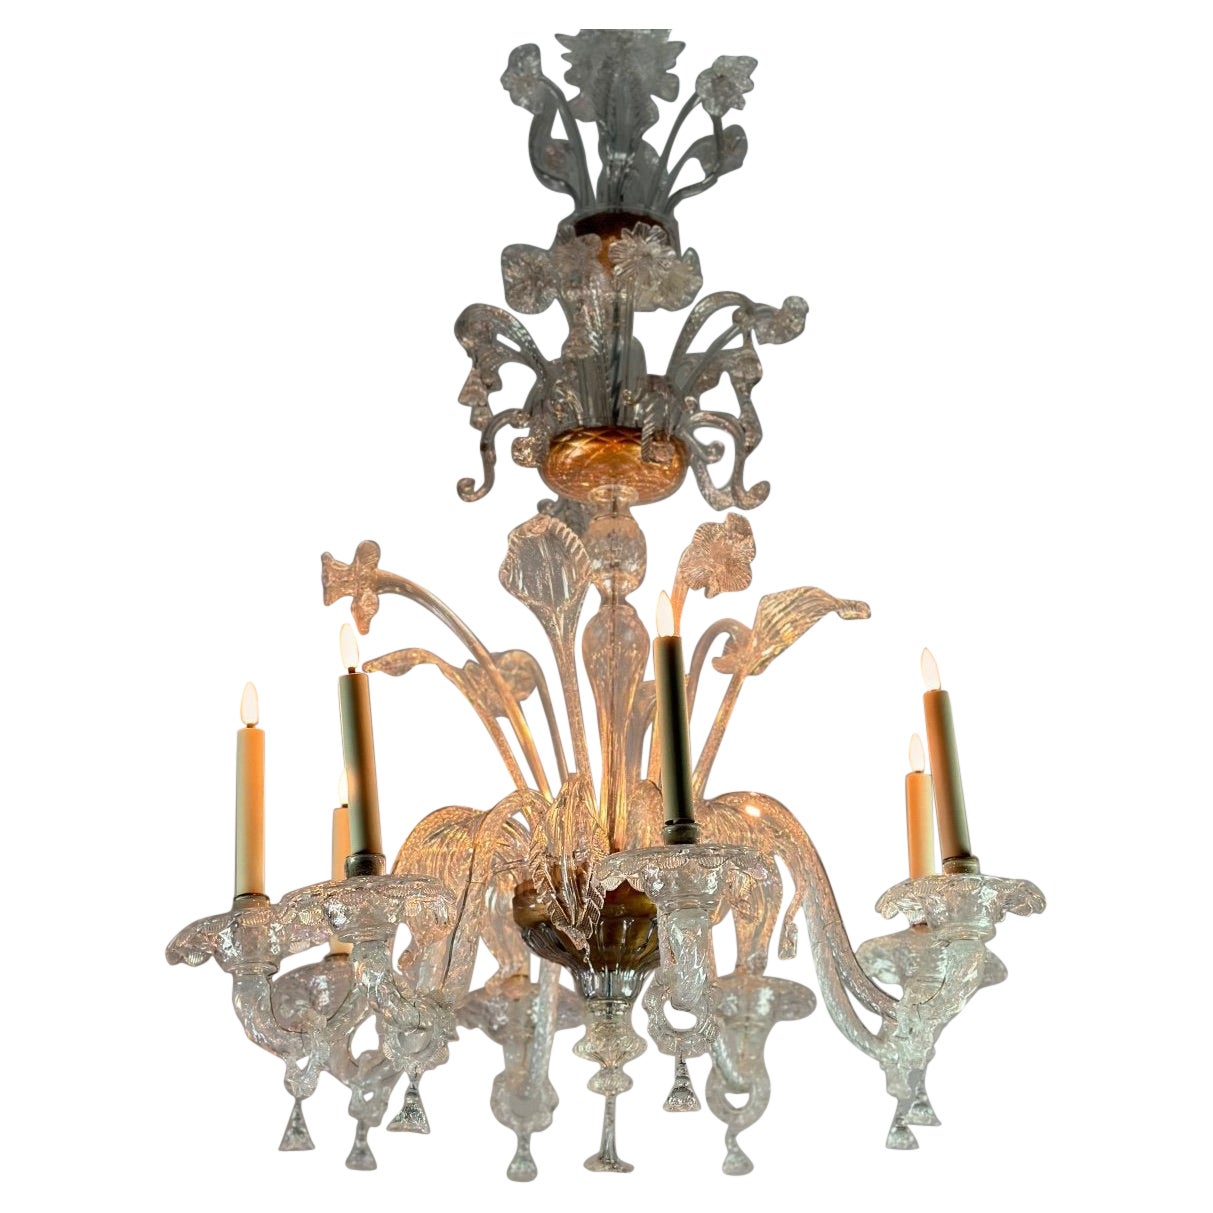 Farbloser Murano-Glas-Kronleuchter mit 8 Armen und Lights CIRCA 1890